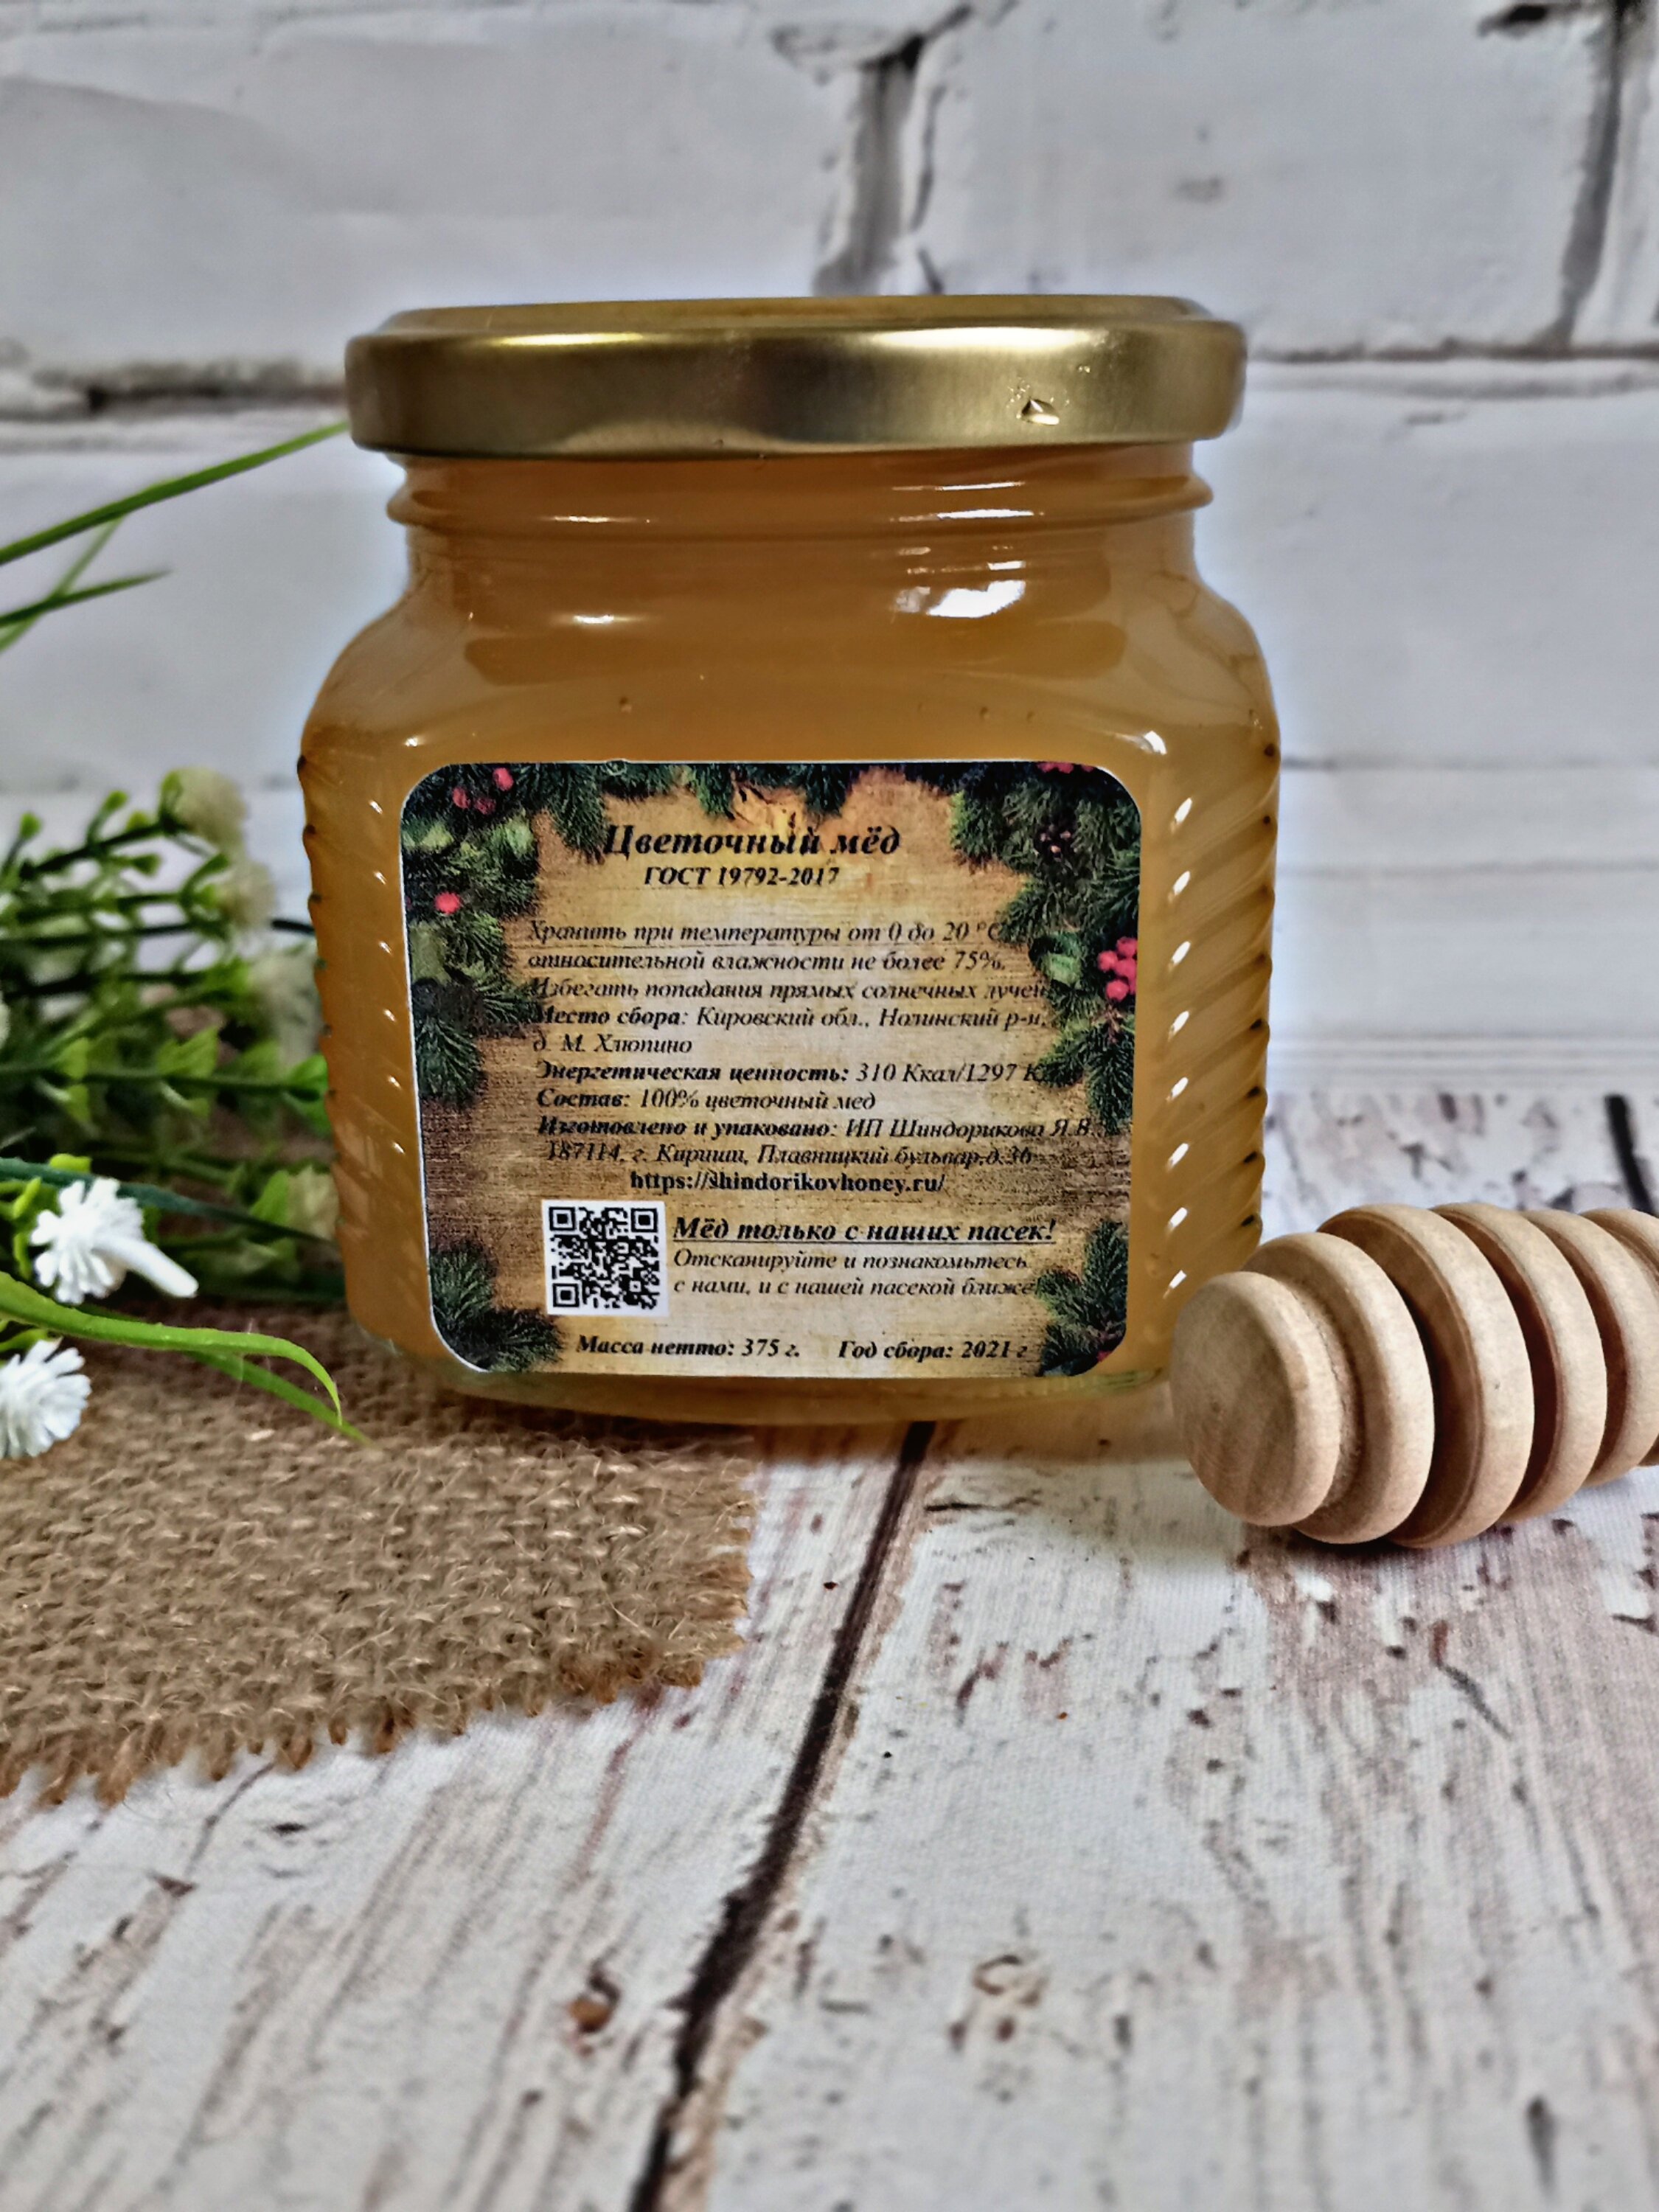 Мёд северный цветочный с личной пасеки, Шиндориков Мед, 375 г, сбор 2021 г /без сахара /без добавок/без нагрева - фотография № 3